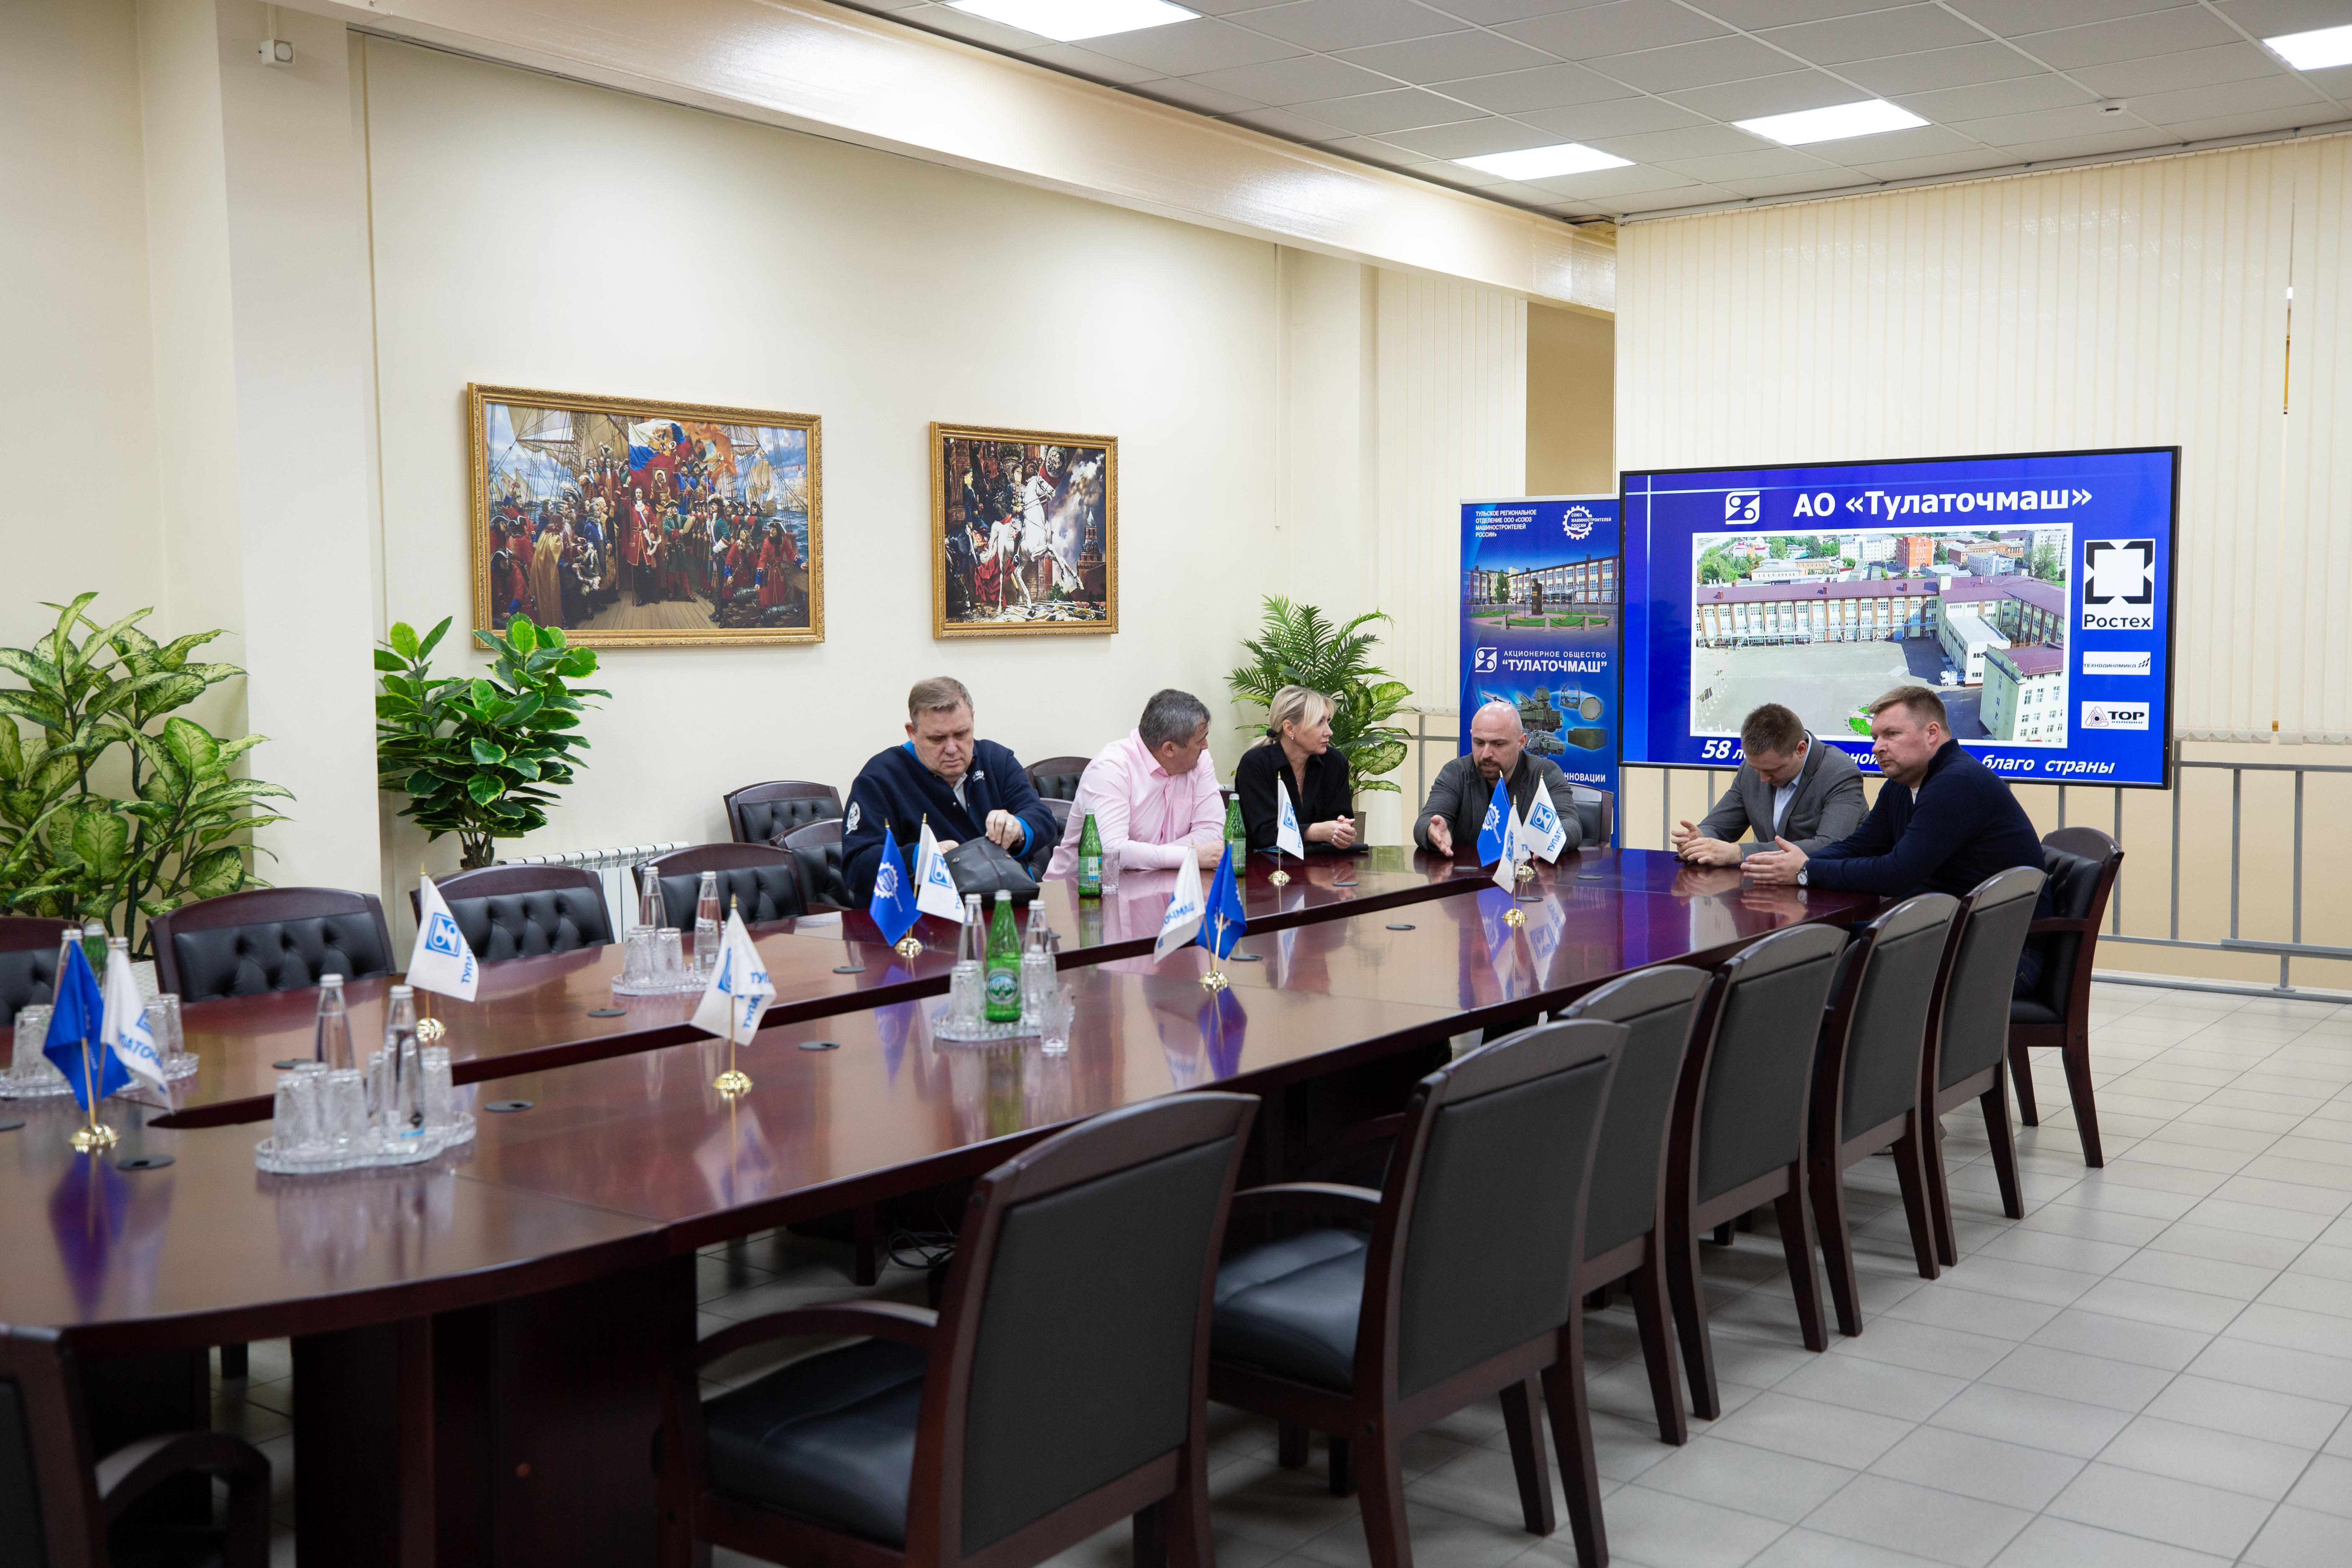 Участники программы Высшей школы государственного управления РАНХиГС посетили АО «Тулаточмаш»